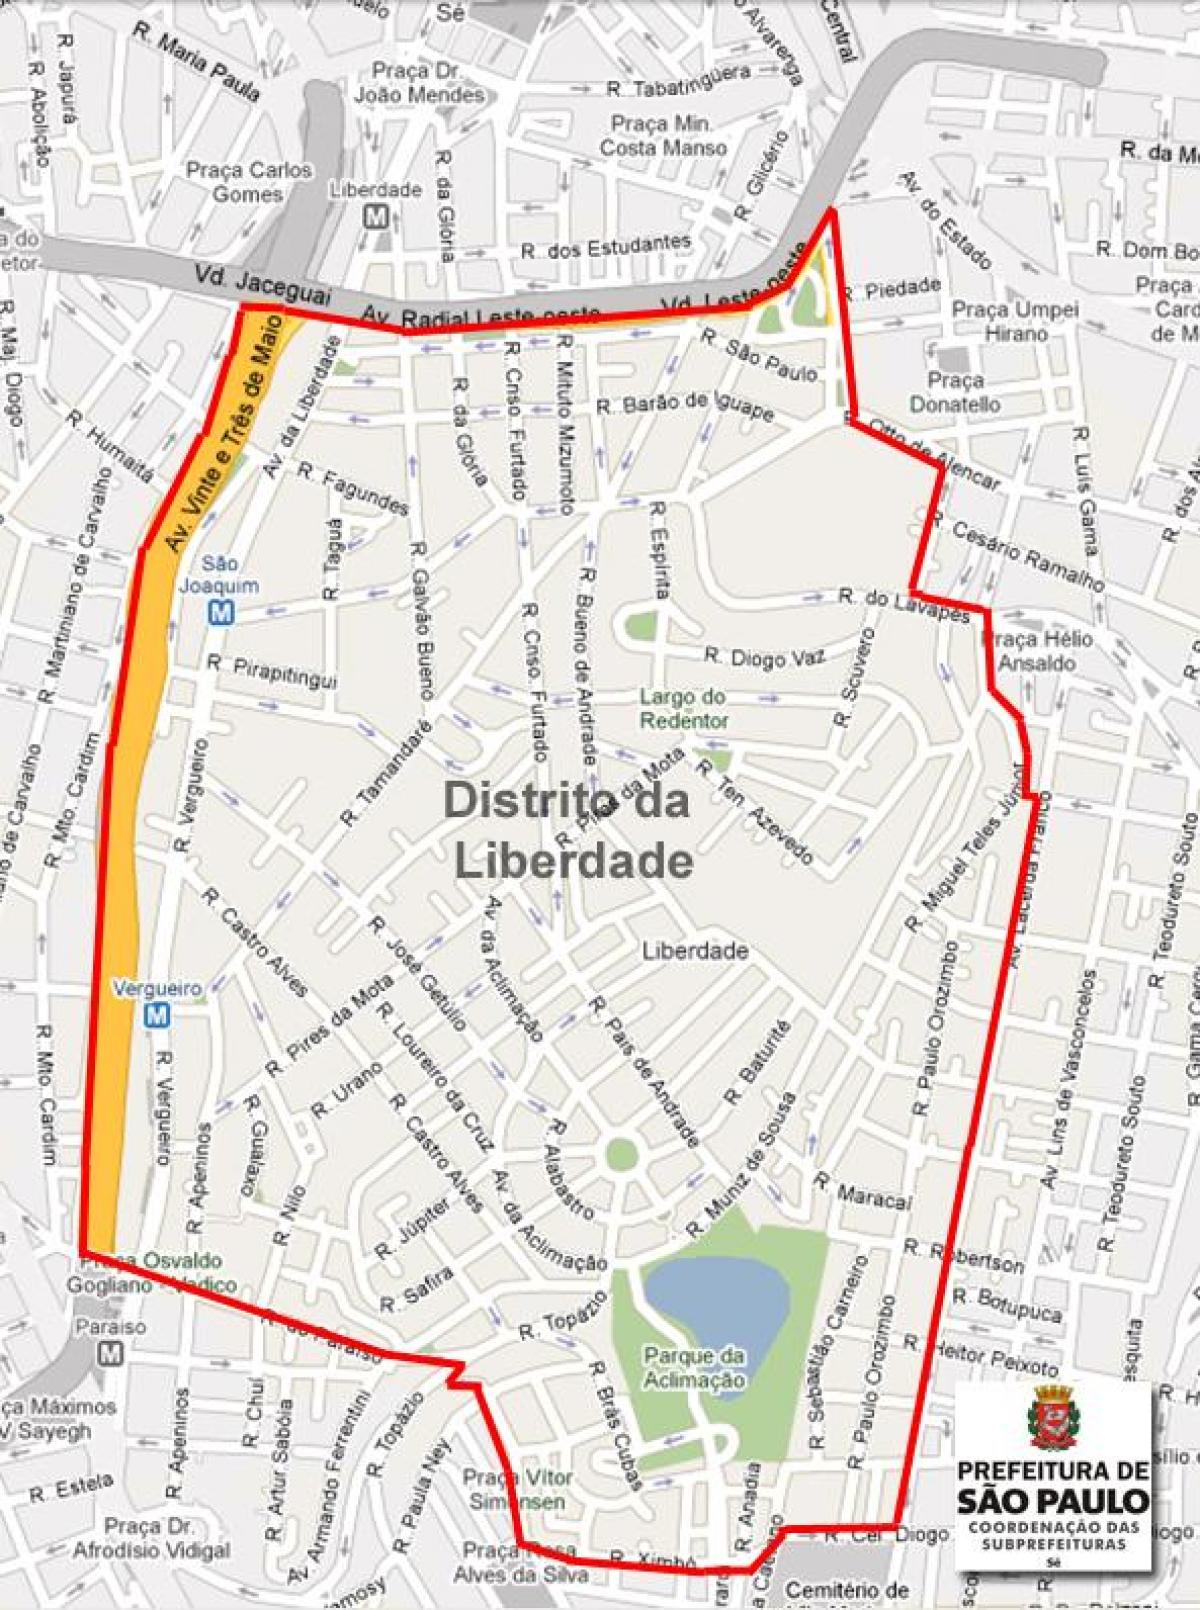 Քարտեզ Либердаде, Սան Պաուլո